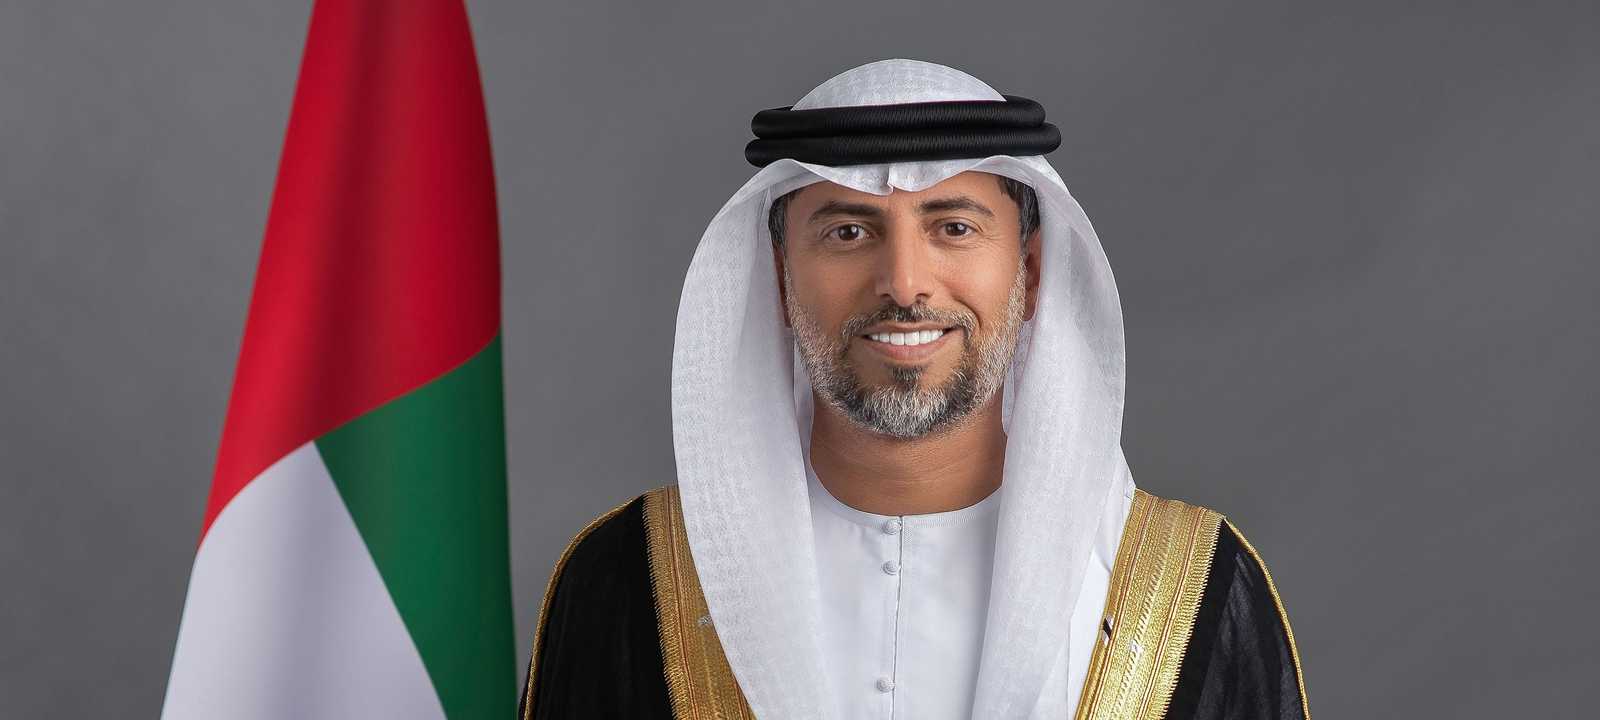 سهيل بن محمد المزروعي وزير الطاقة والبنية التحتية الإماراتي